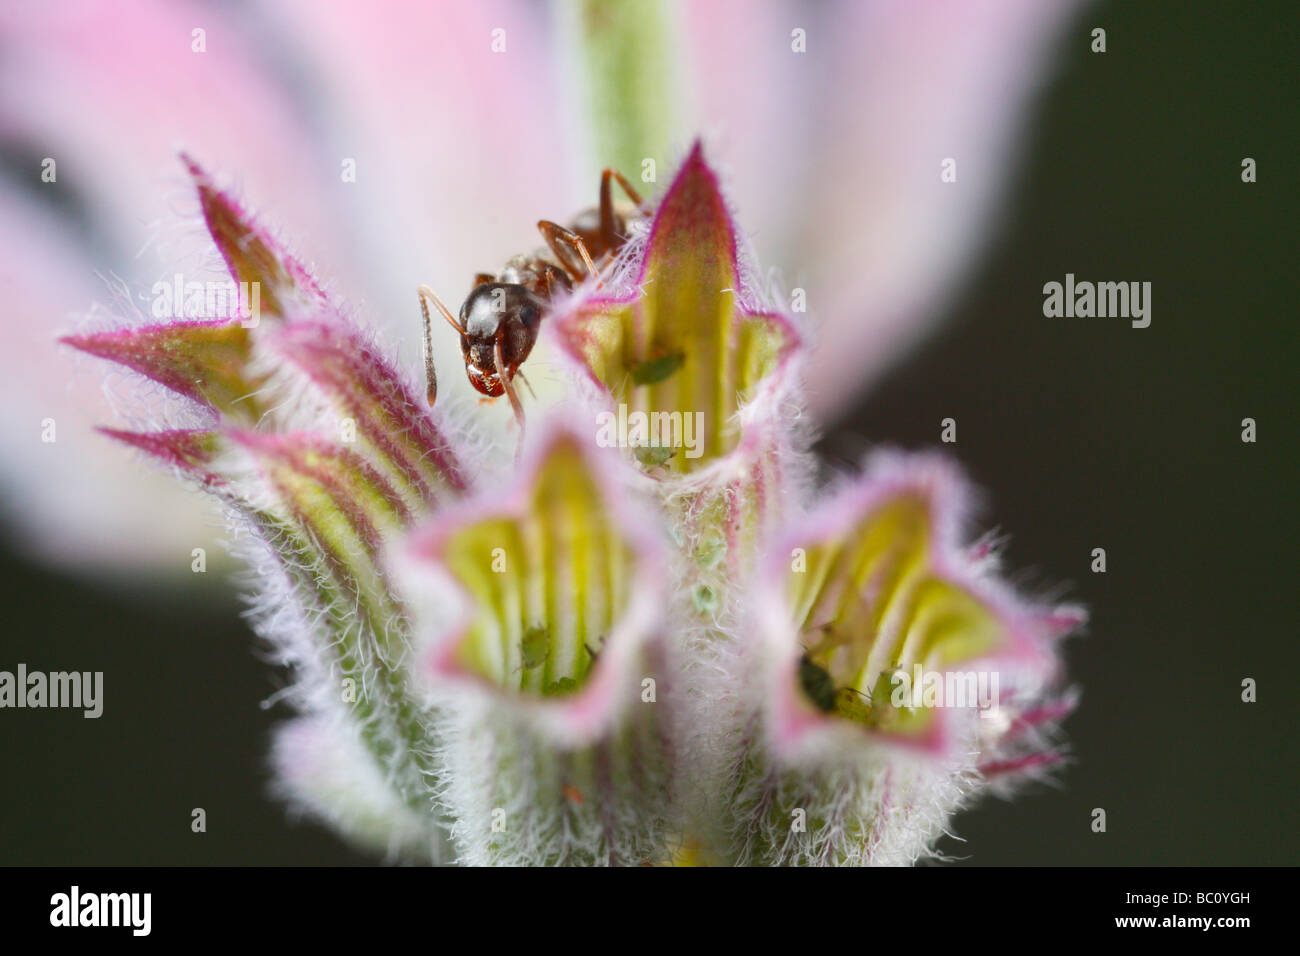 Lasius niger, la hormiga negra de jardín, y los áfidos. Los áfidos sentarse dentro de una flor de hierba gatera Foto de stock